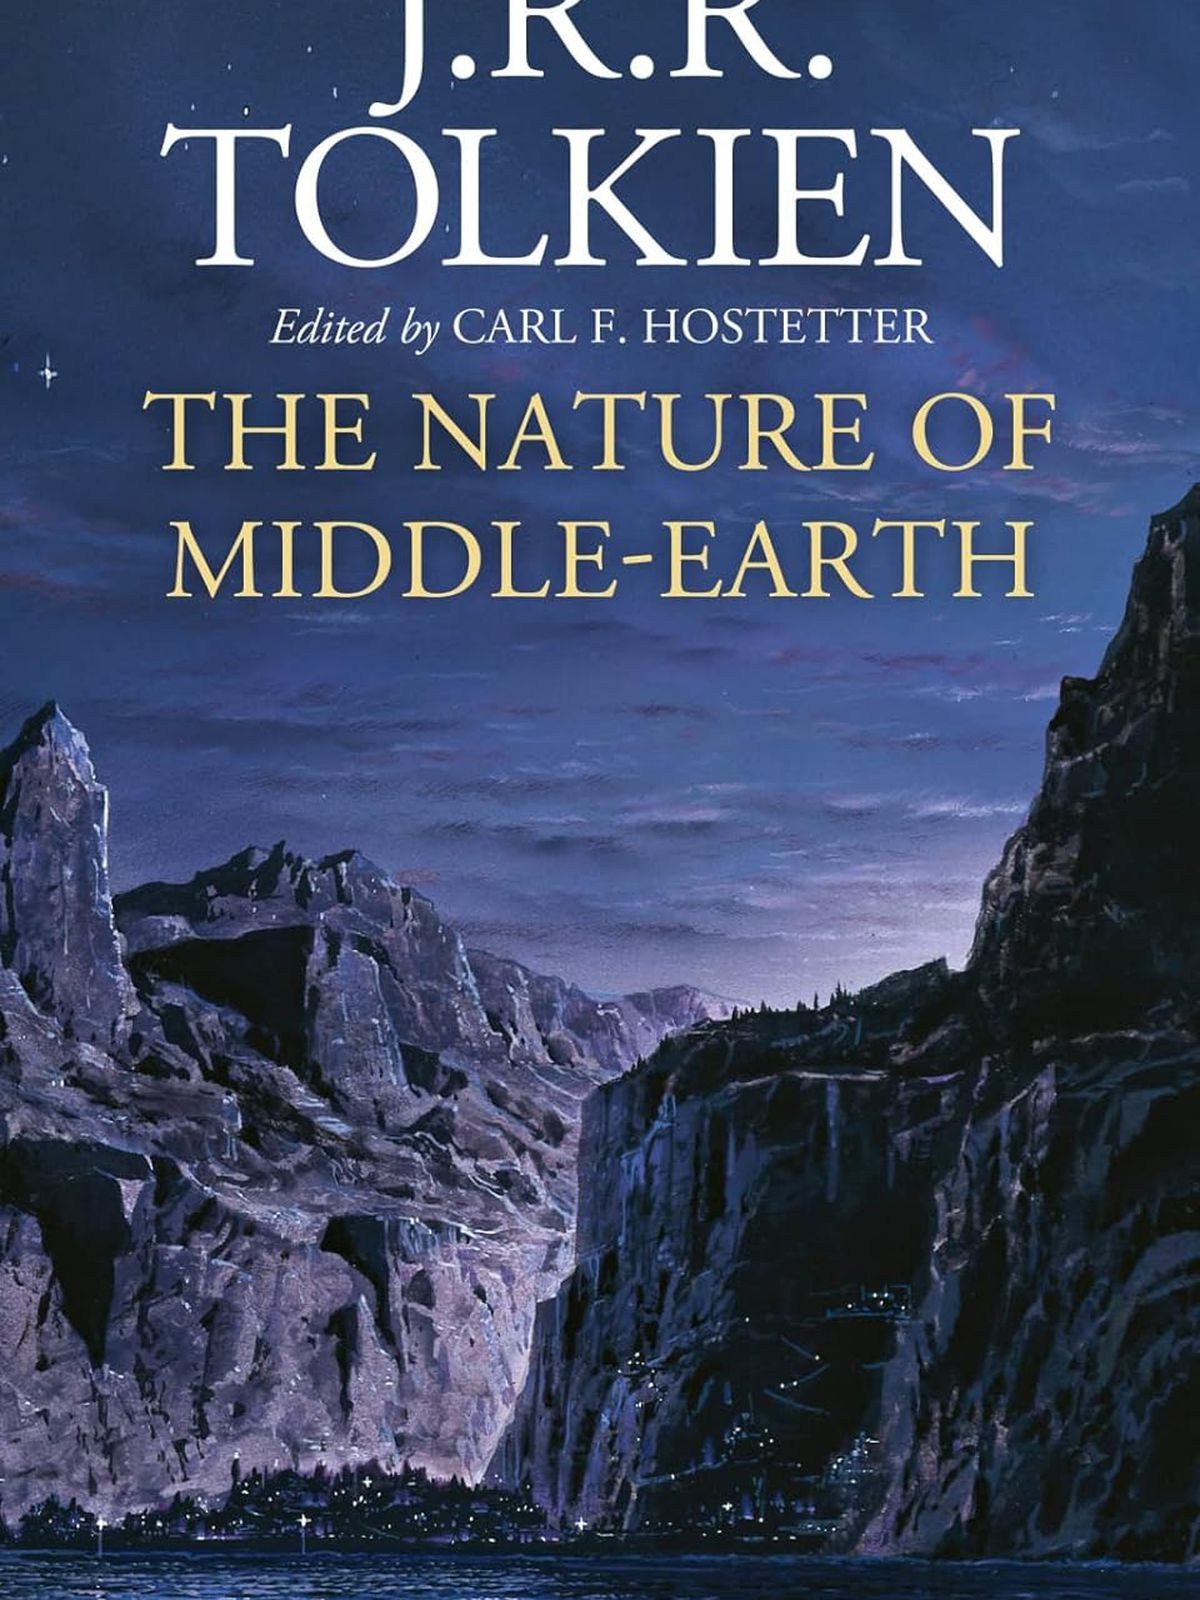 La couverture de La Nature de la Terre du Milieu de JRR Tolkein, qui montre une rivière avec des montagnes de chaque côté.